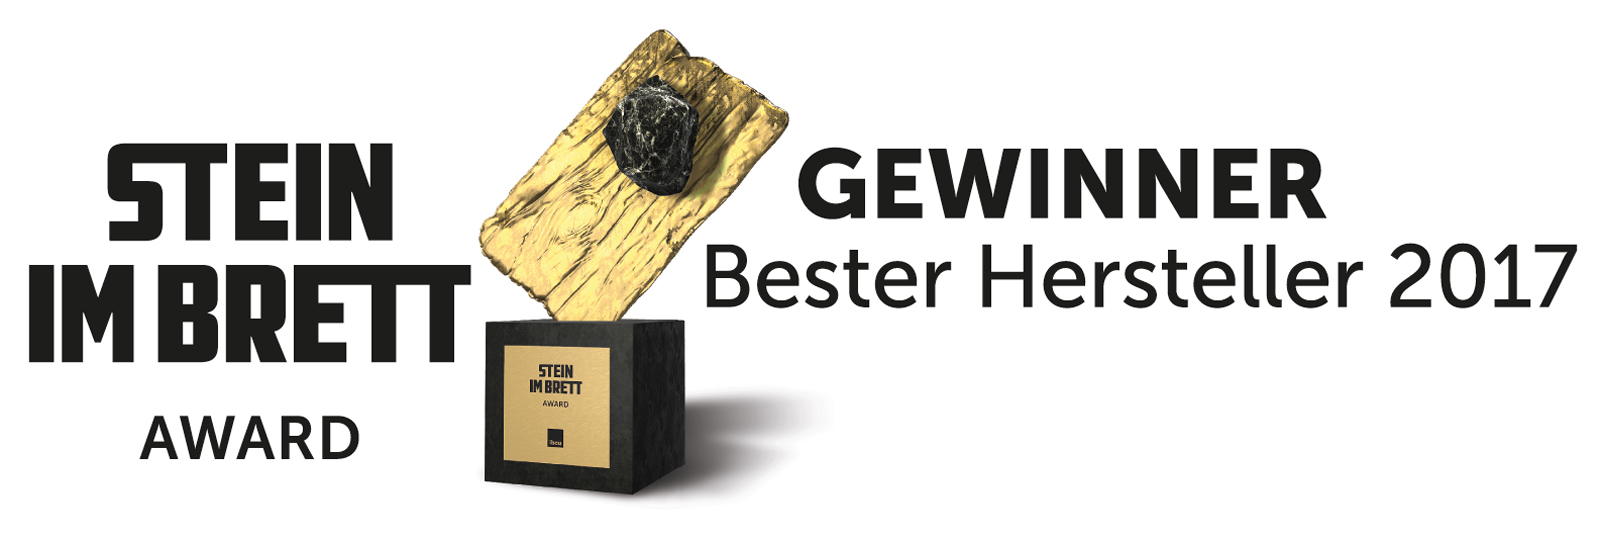 Bester Hersteller: "Stein im Brett Award" für Brillux